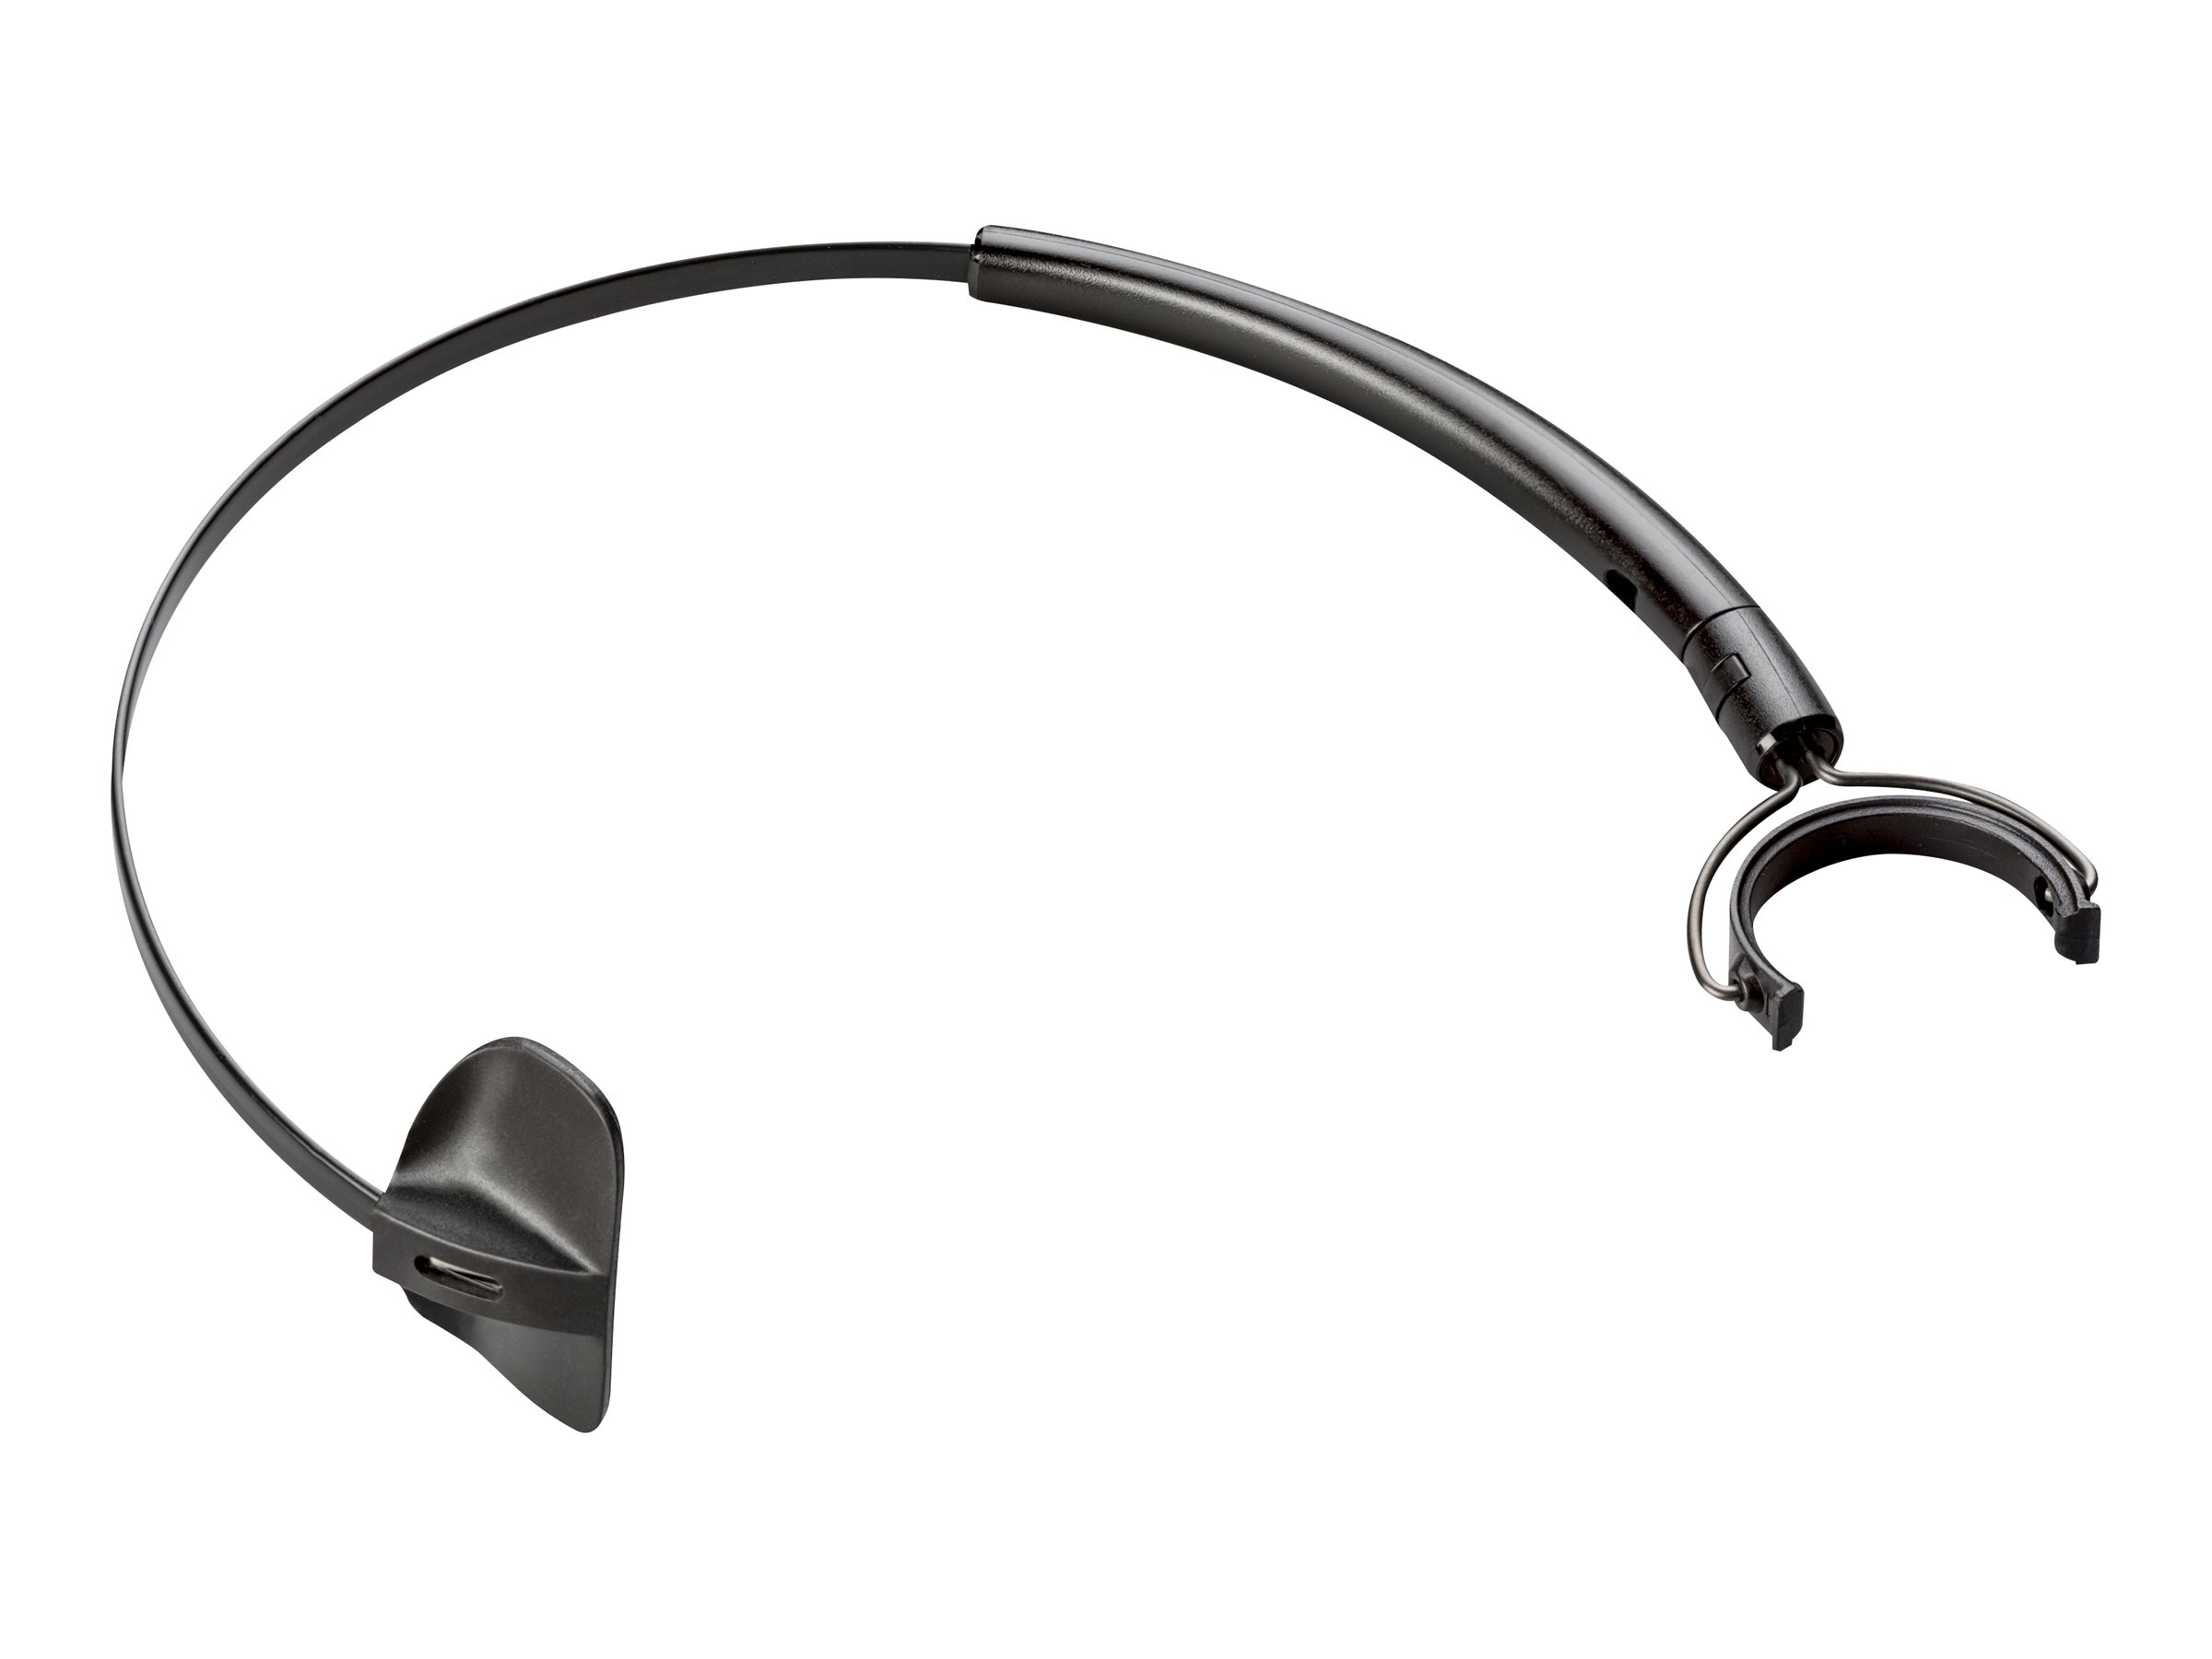 Poly - Serre-tête pour casque - au-dessus de la tête - pour Poly EncorePro HW540 - 85R20AA - Accessoires pour écouteurs